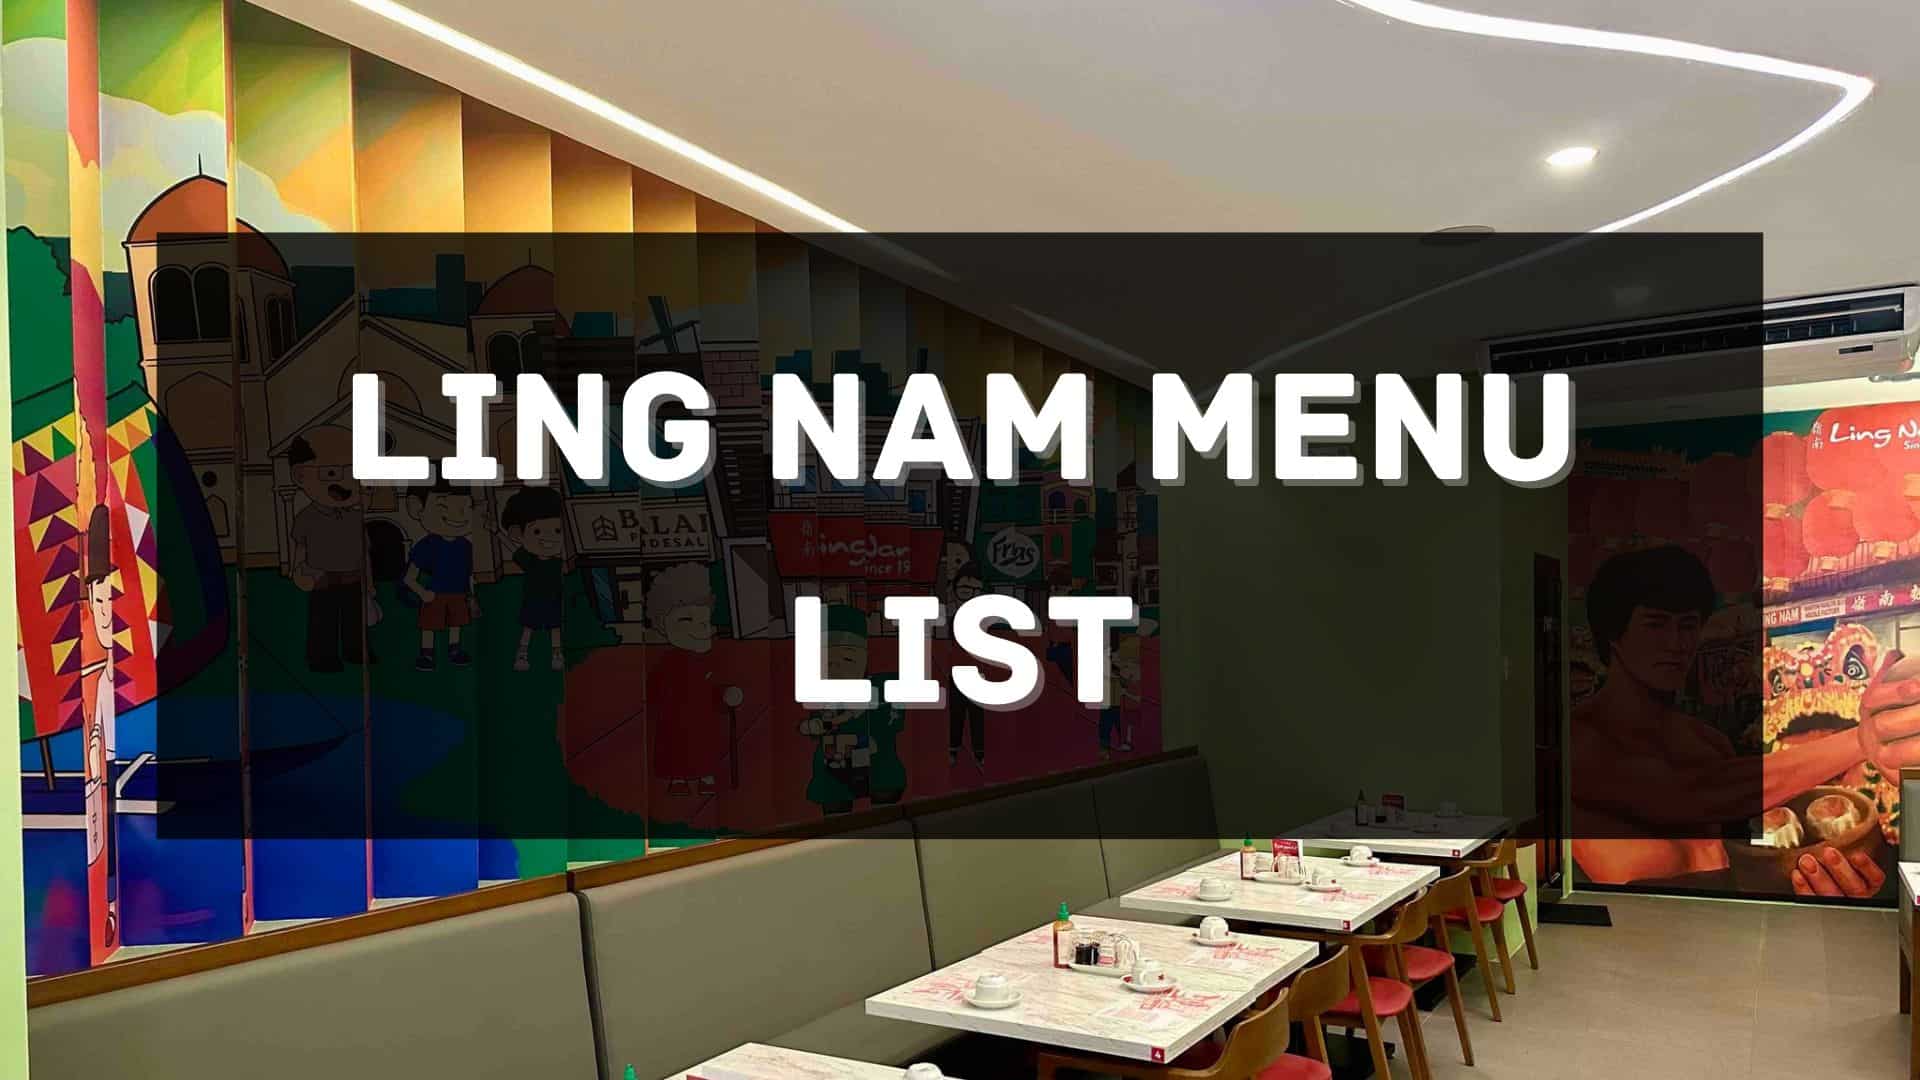 ling nam menu prices philippines